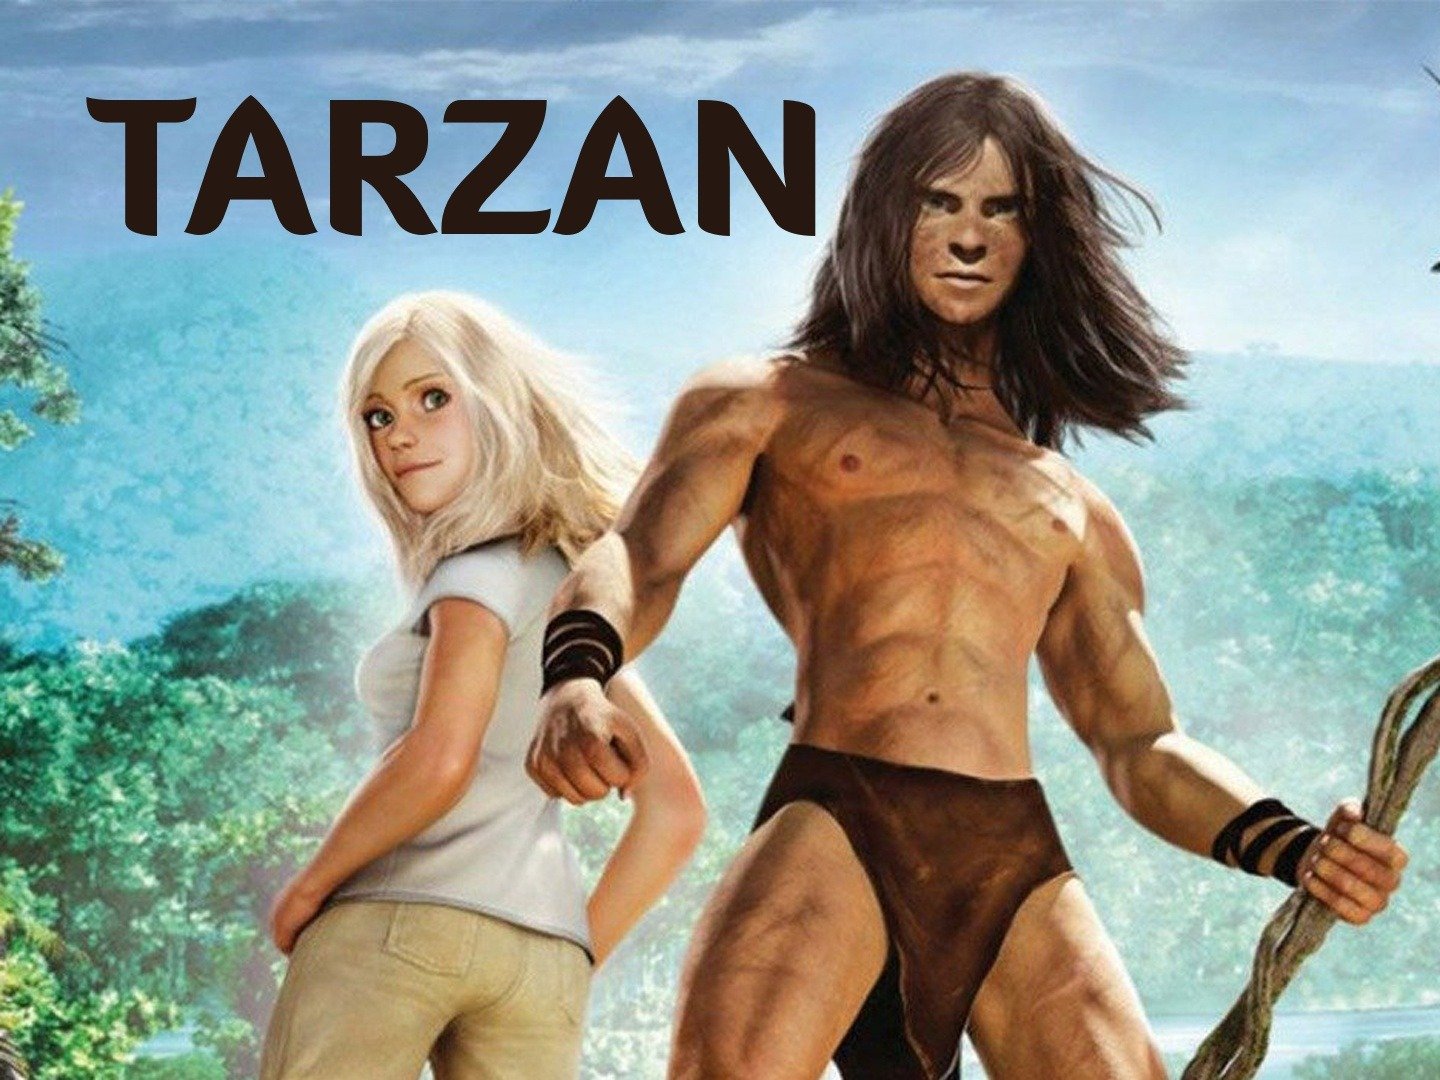 Tarzan Audience Reviews | MovieTickets